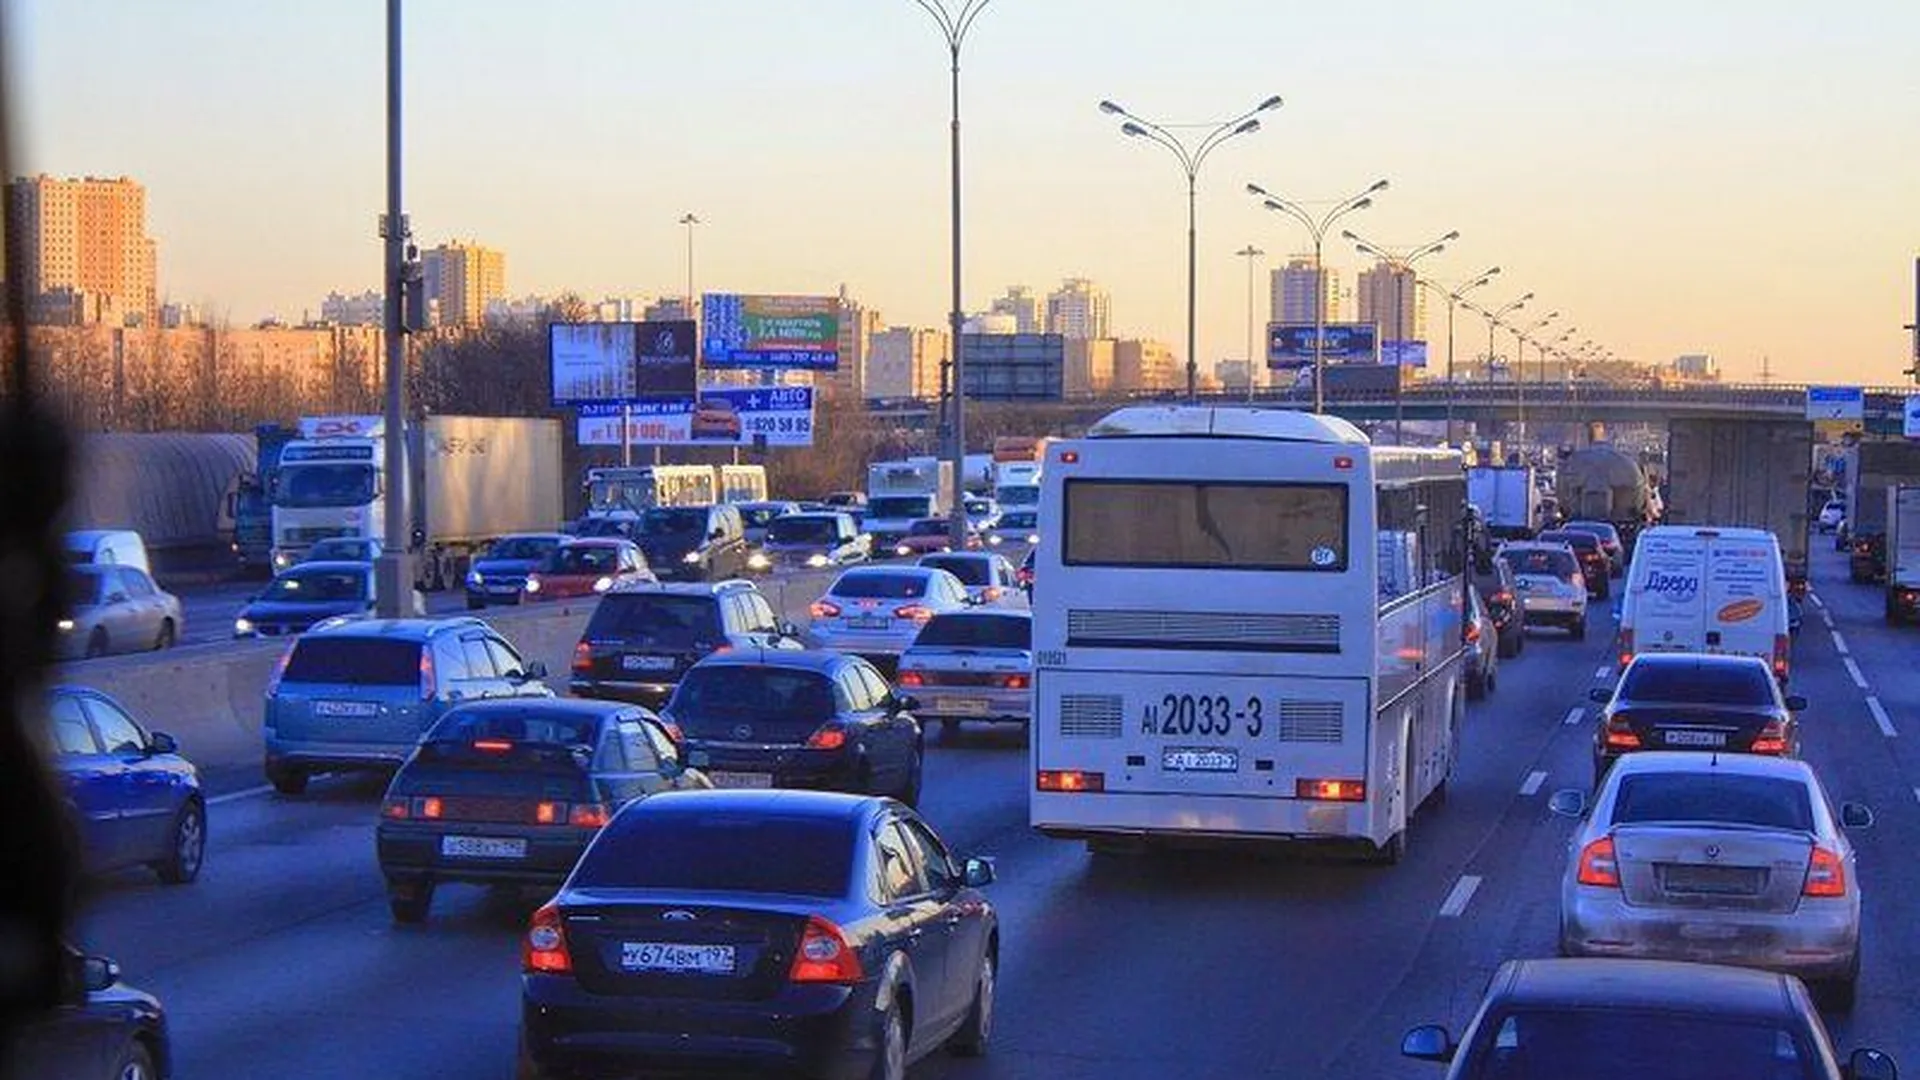 Кашляющий водитель маршрутки, чуть не угодивший в ДТП, напугал пассажиров Красногорска